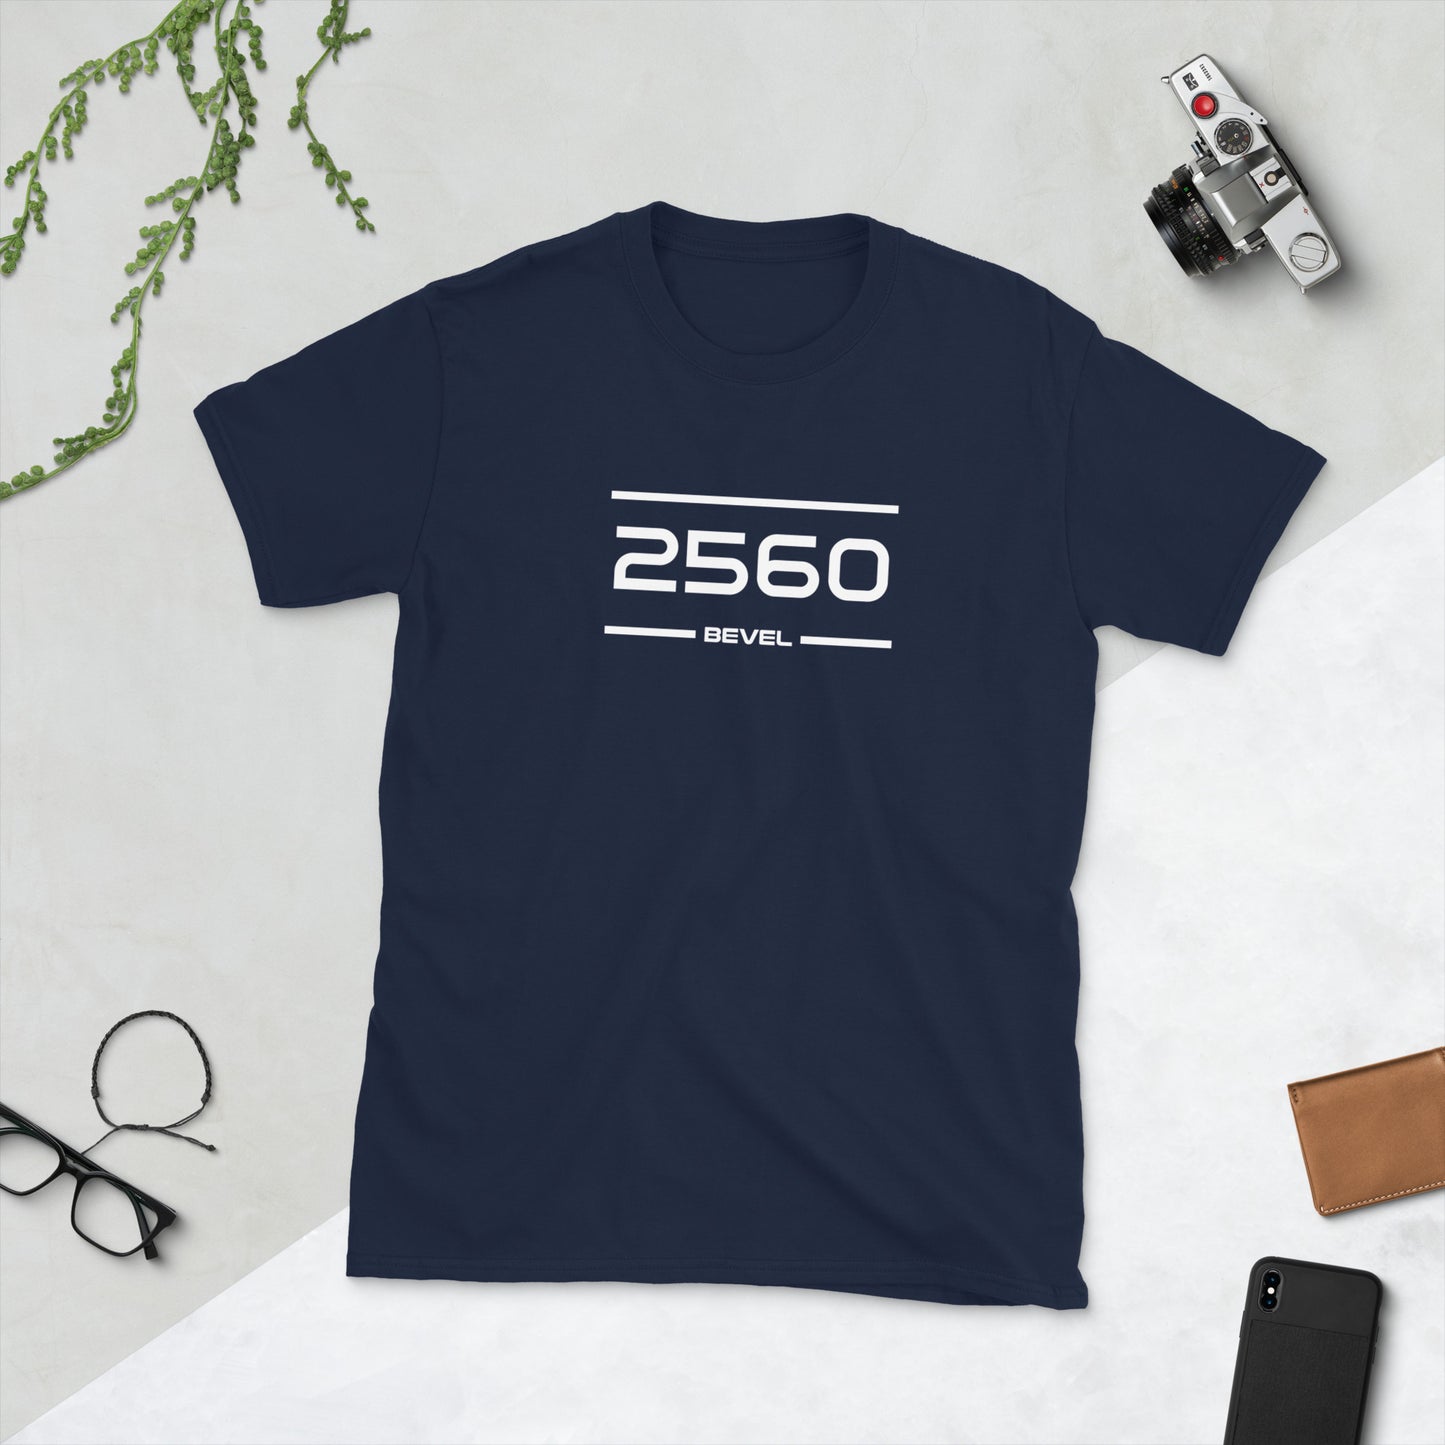 Tshirt - 2560 - Bevel